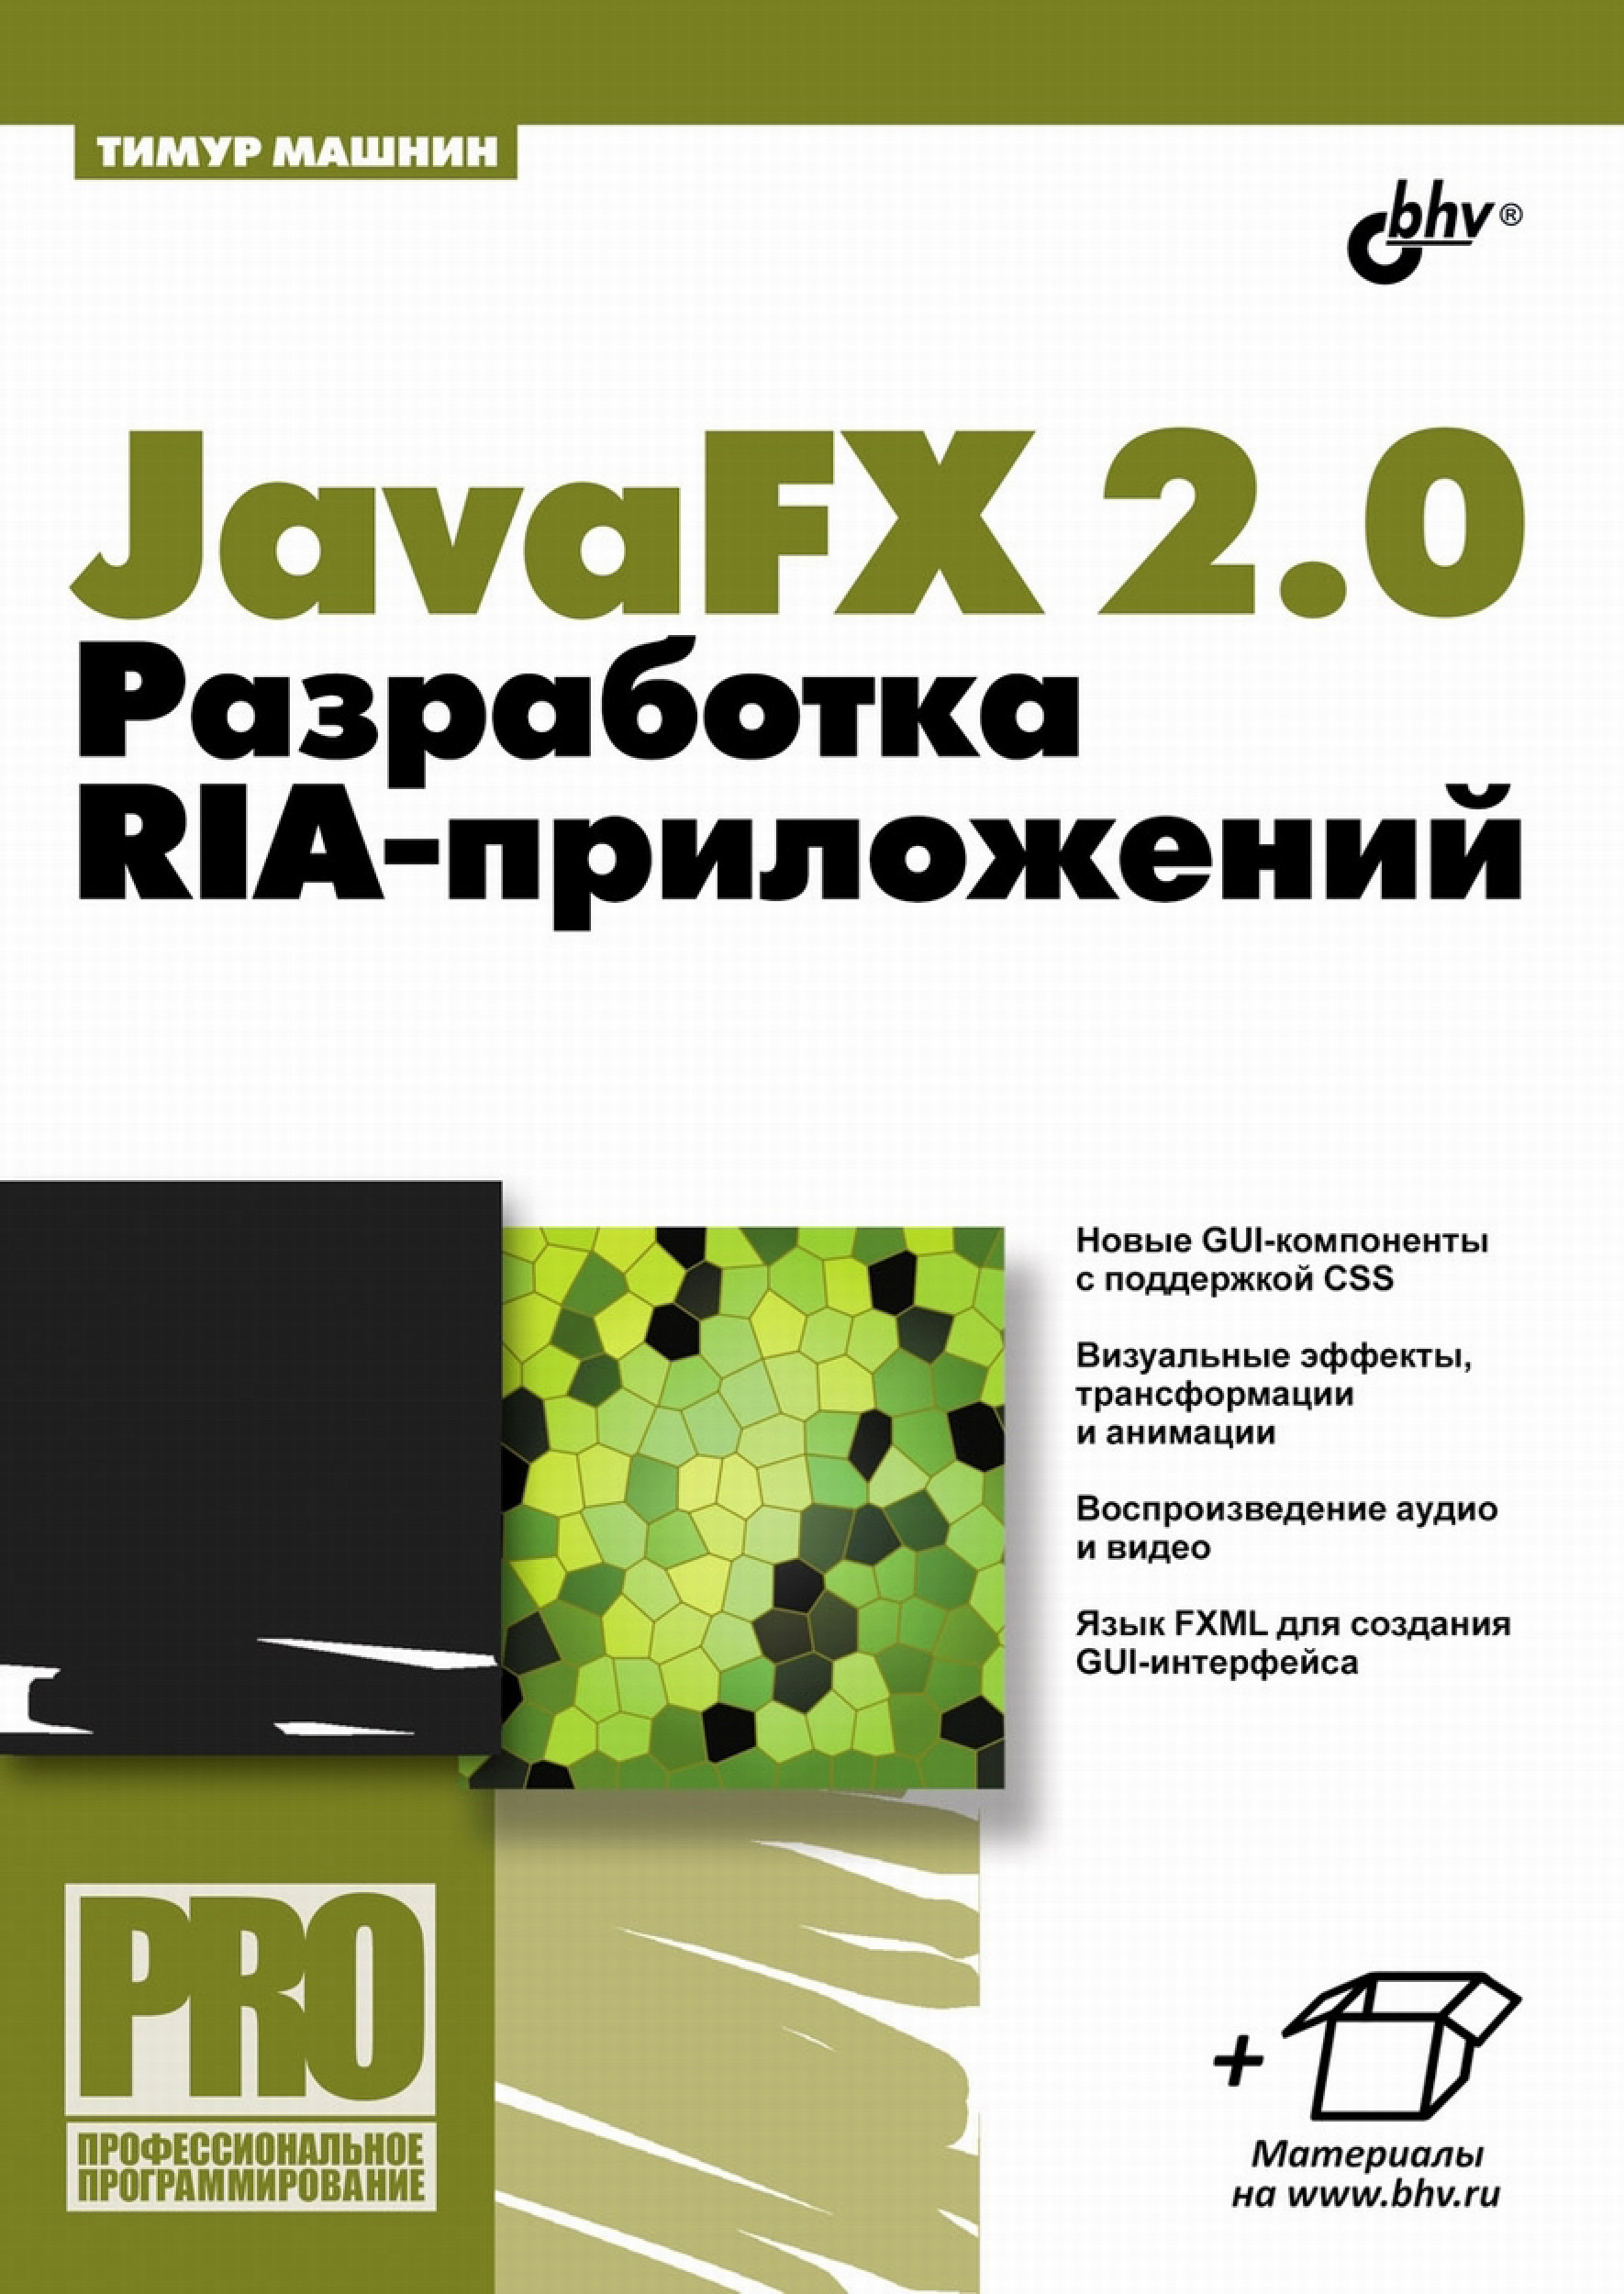 Книга Профессиональное программирование JavaFX 2.0. Разработка RIA-приложений созданная Тимур Машнин может относится к жанру интернет, программирование, техническая литература. Стоимость электронной книги JavaFX 2.0. Разработка RIA-приложений с идентификатором 7061632 составляет 199.00 руб.